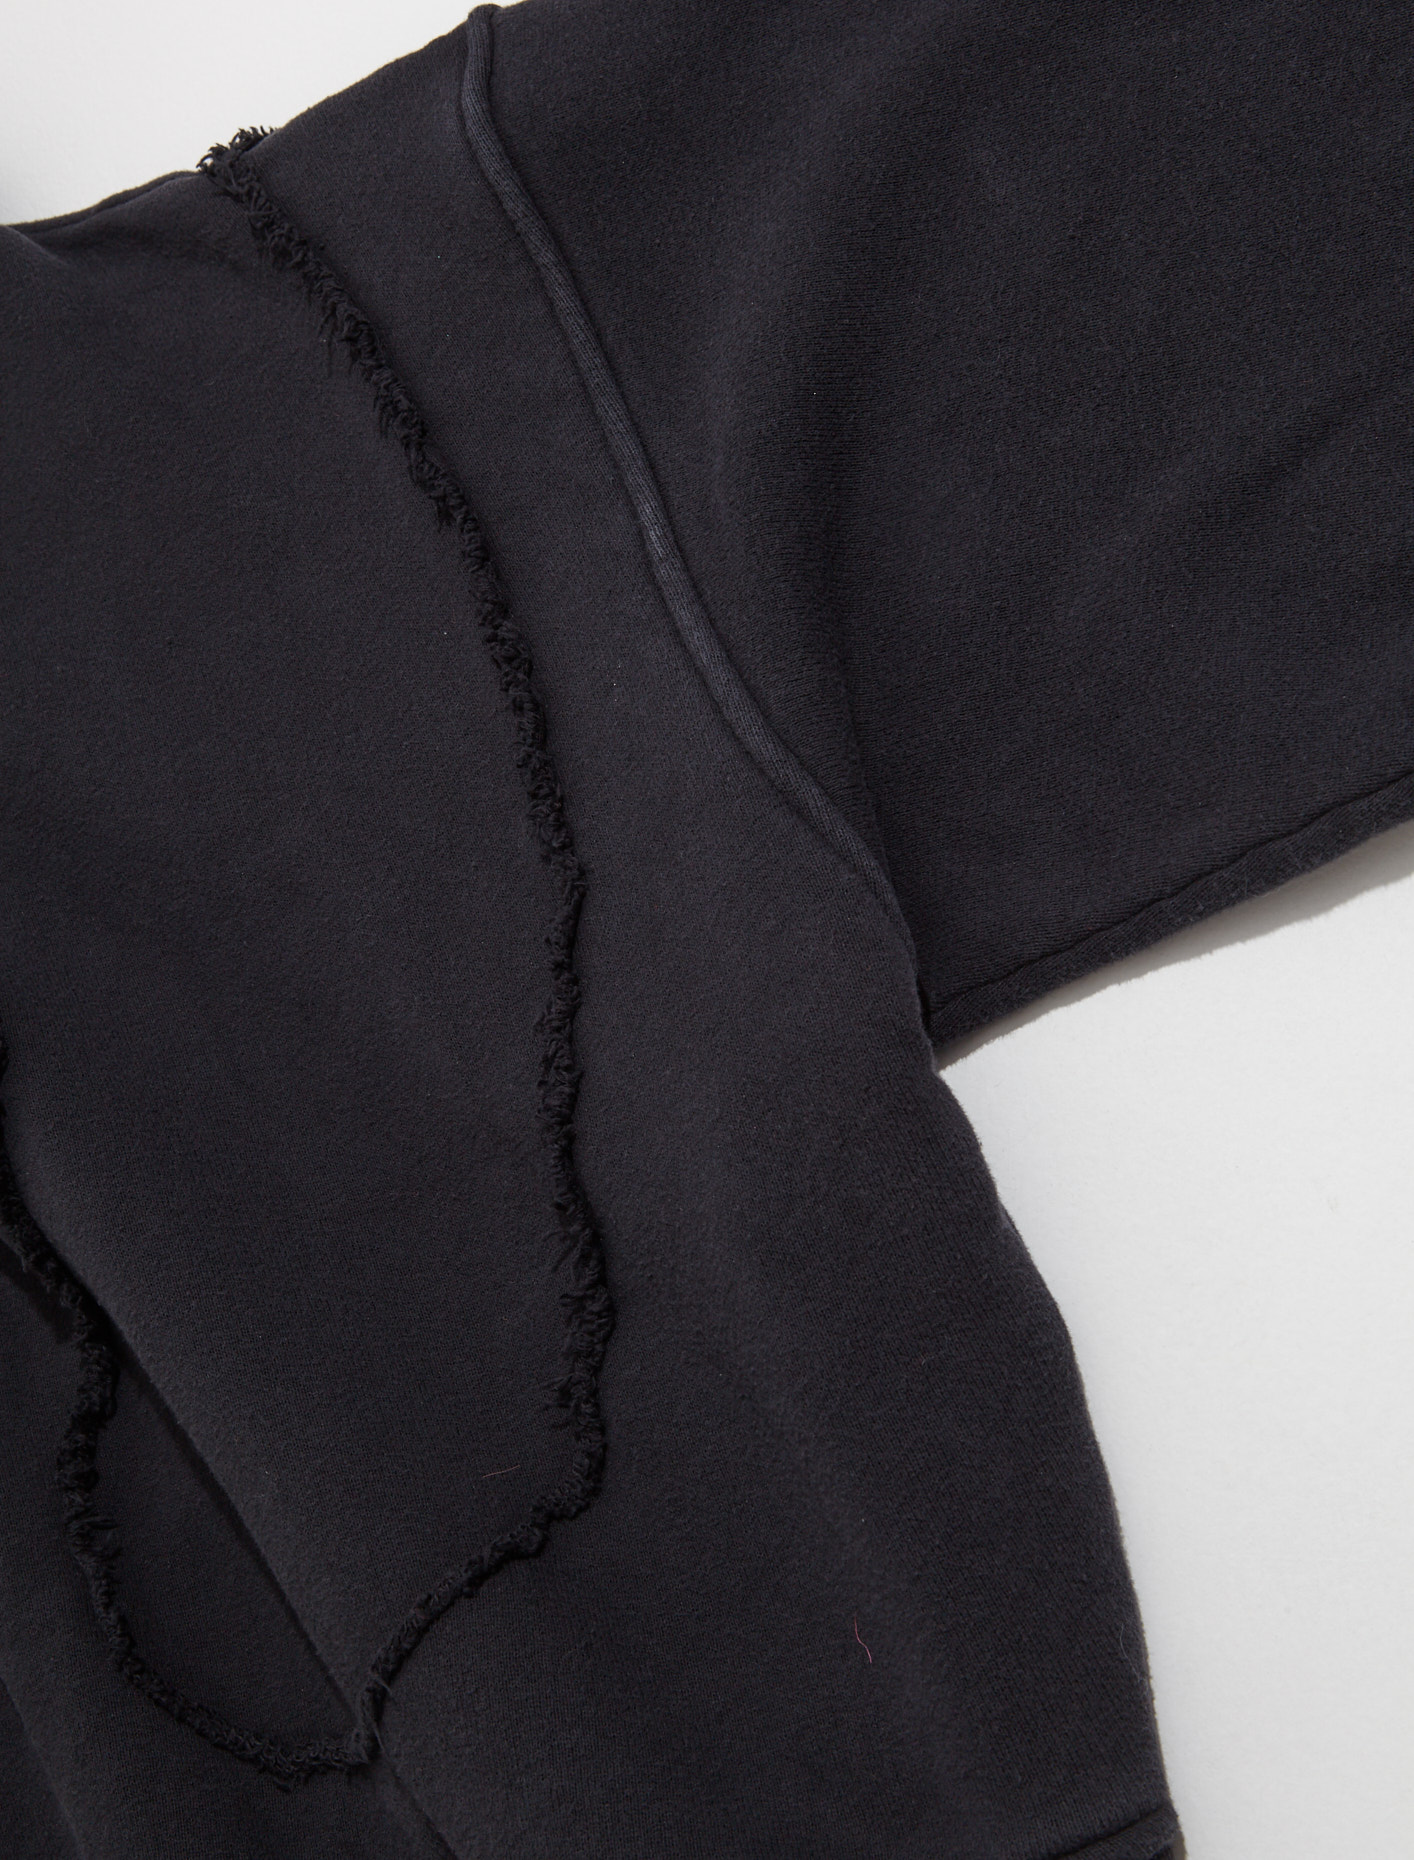 ERL Swirl Premium Fleece Hoodie in Black | Voo Store Berlin | Worldwide